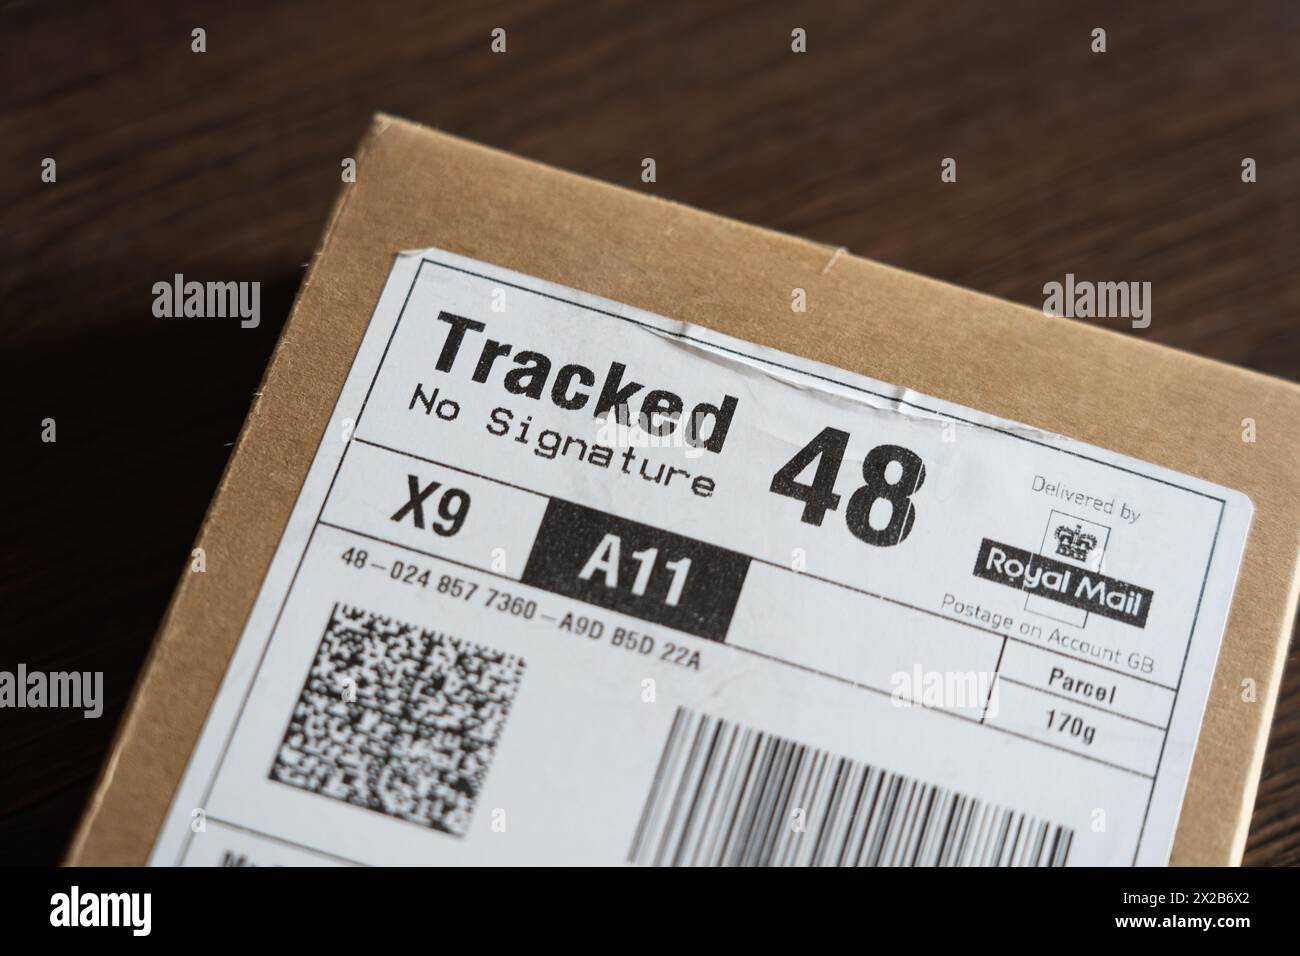 Eine 48-Stunden-Kartonverpackung mit einem Barcode und einem QR-Code auf dem Papieretikett von Royal Mail verfolgte No Signature. Konzept: QR-Codes, Poststreik Stockfoto